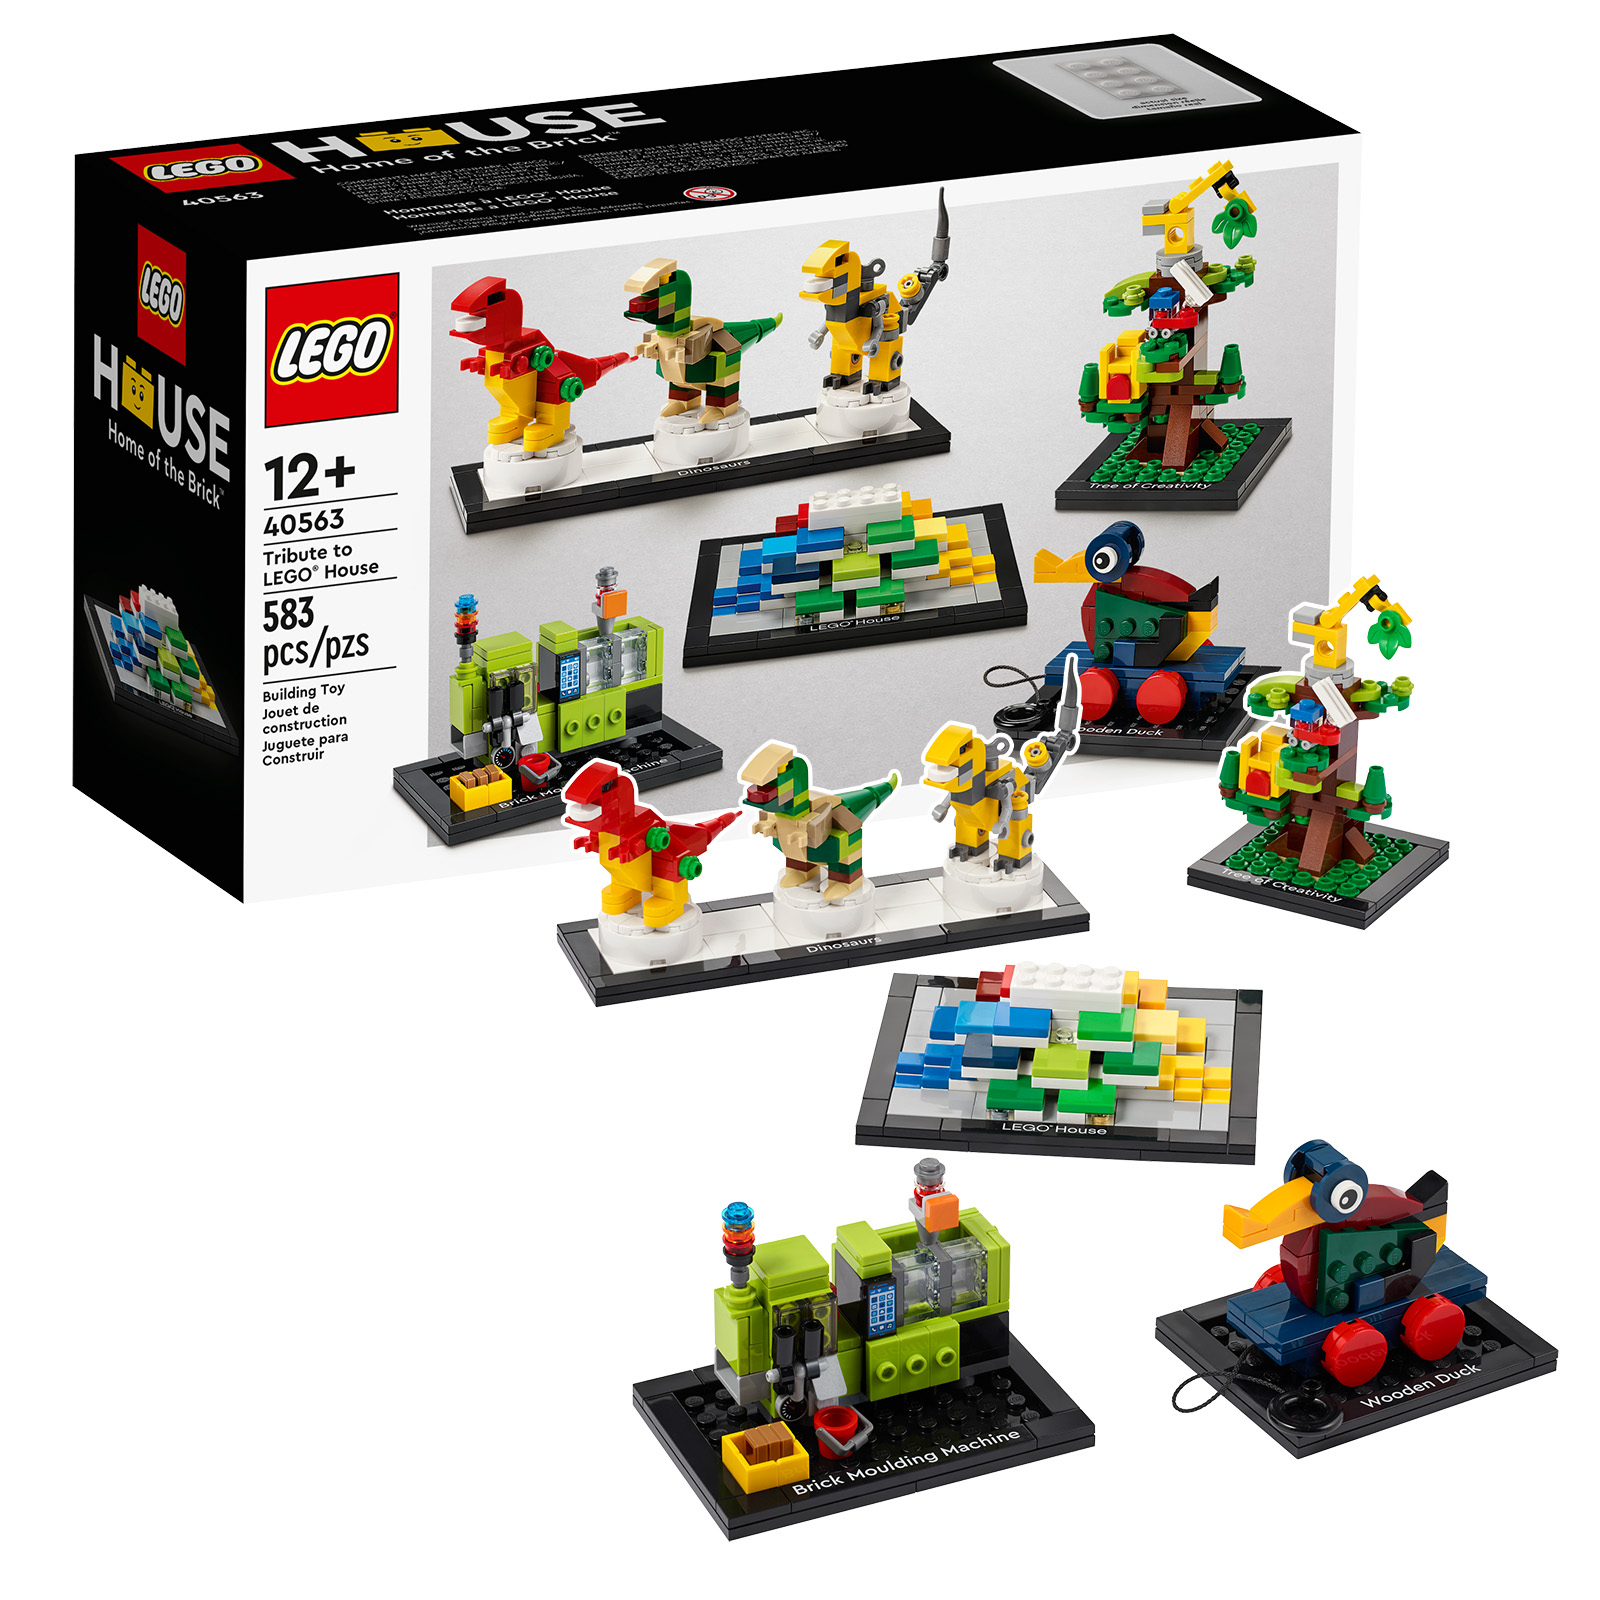 Herinnering: laatste uren om een ​​exemplaar van de set LEGO 40563 Tribute to LEGO House te bemachtigen